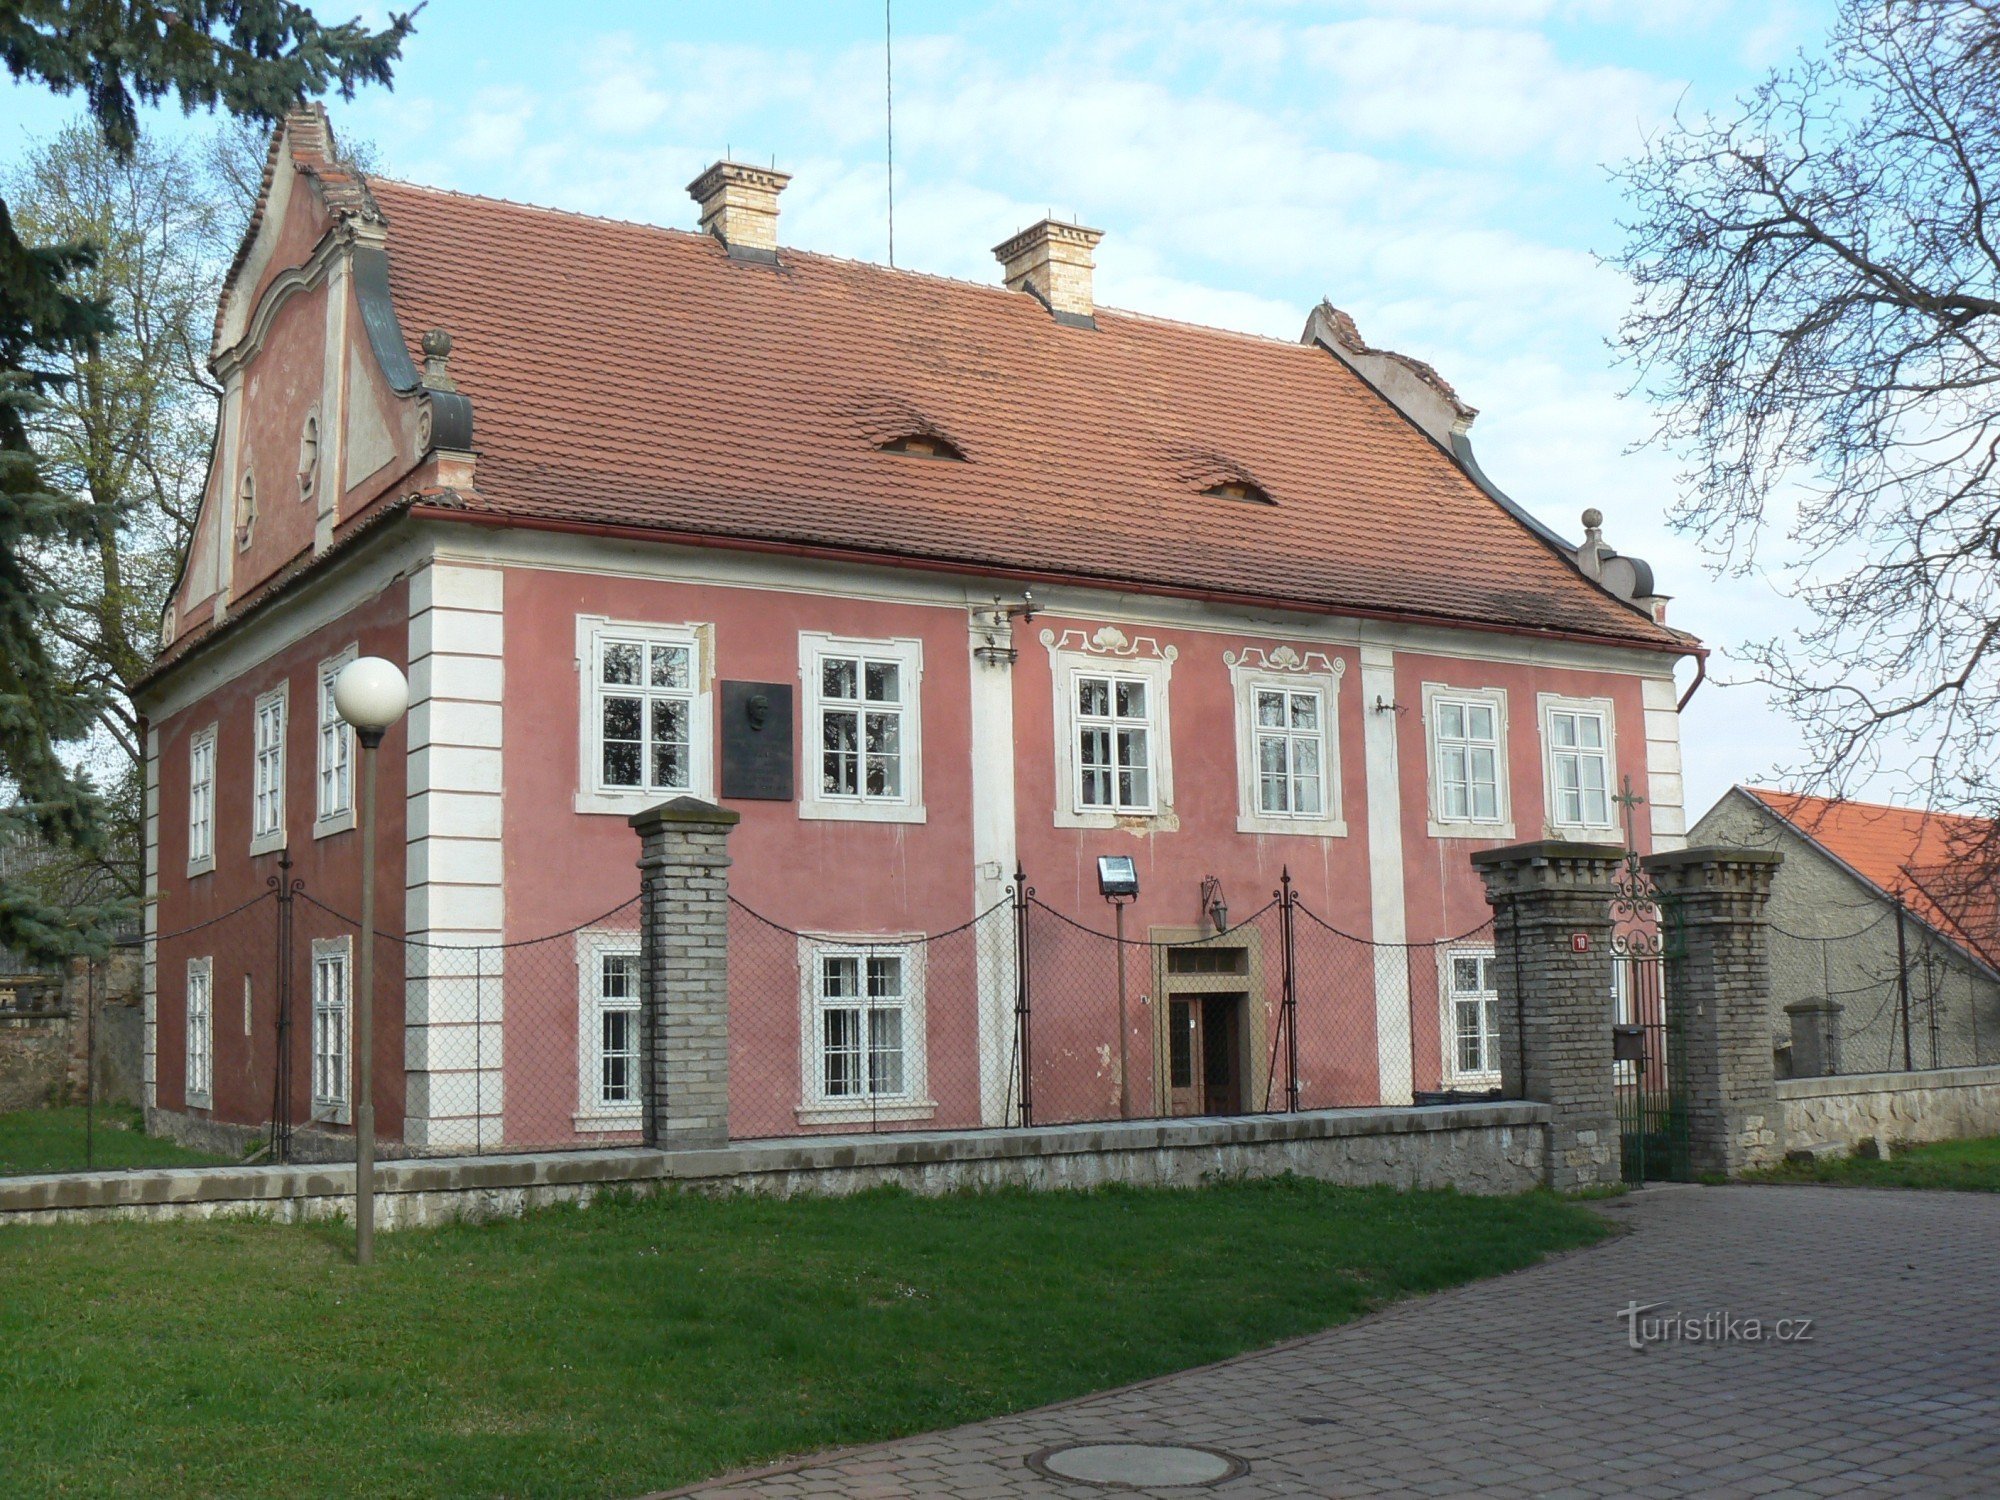 Orech, casa nº 10 atrás da igreja, local de trabalho de J.Š. Baar